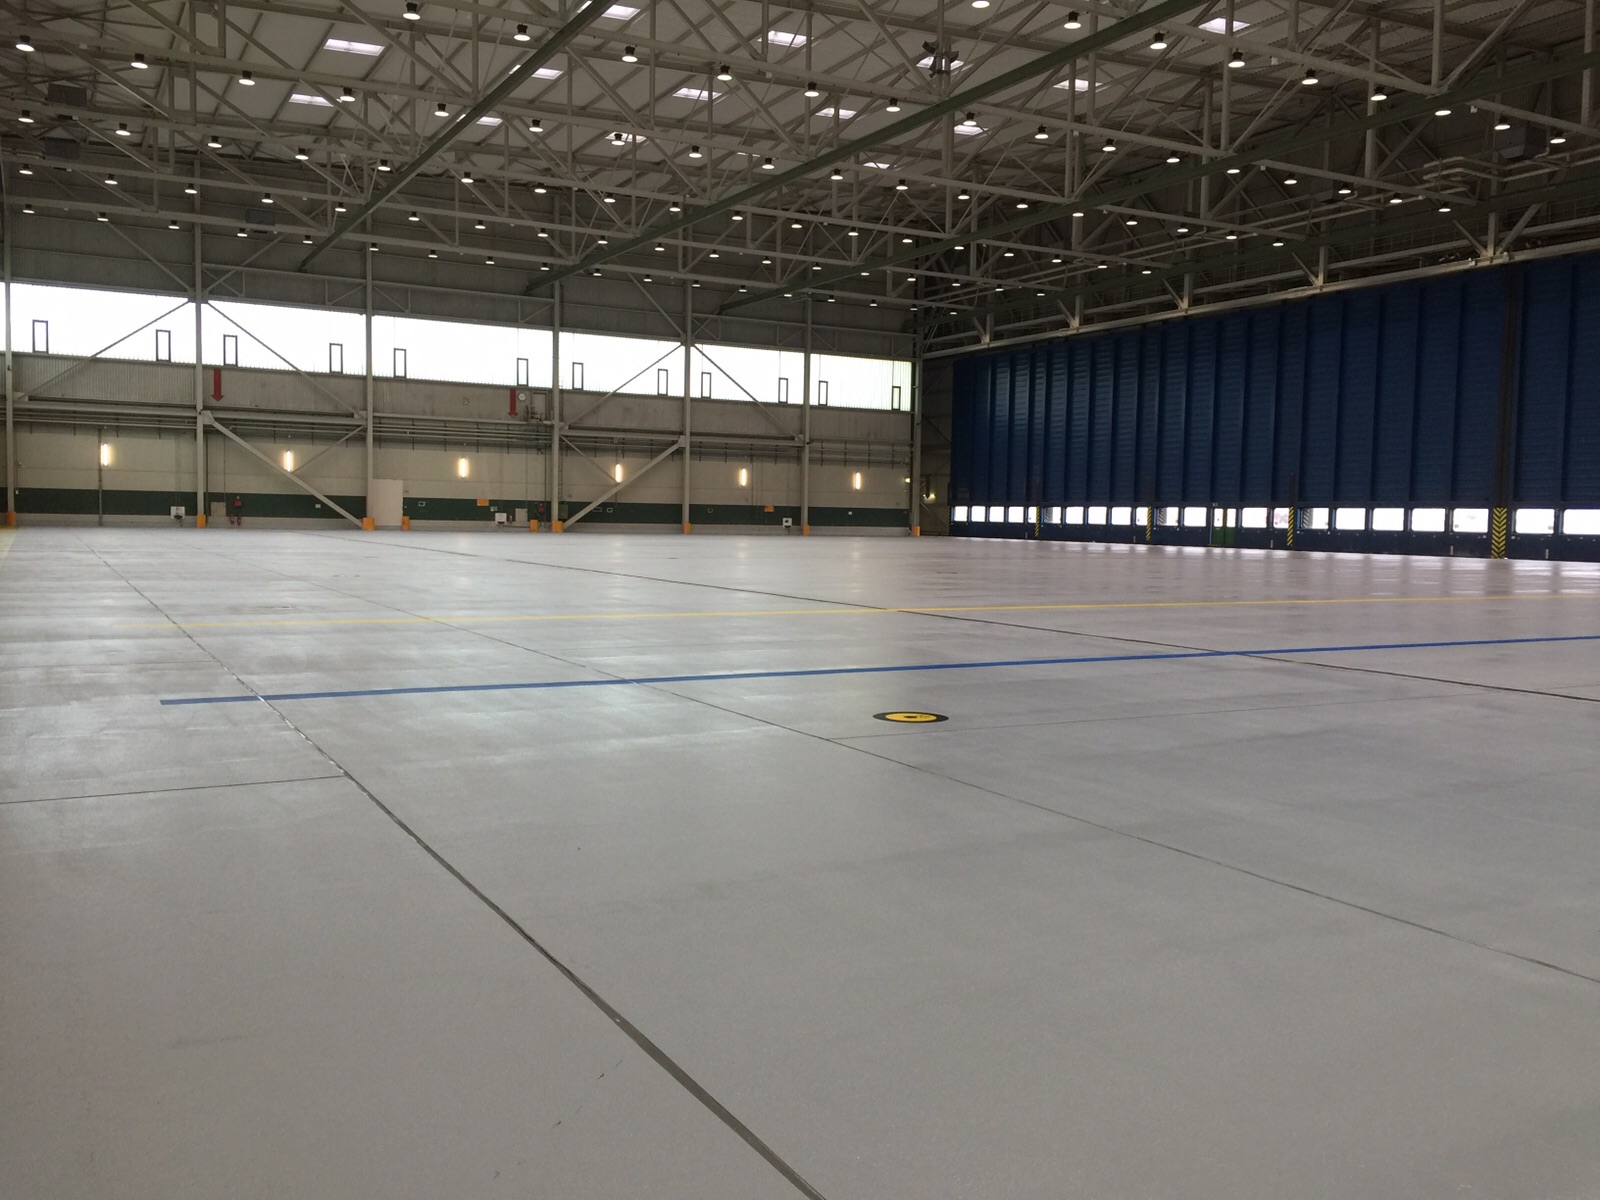 Obr. 4 Hangár pro letadla V tomto hangáru pro letadla byla použita odolná nanášená vrstva pro průmyslové podlahy.